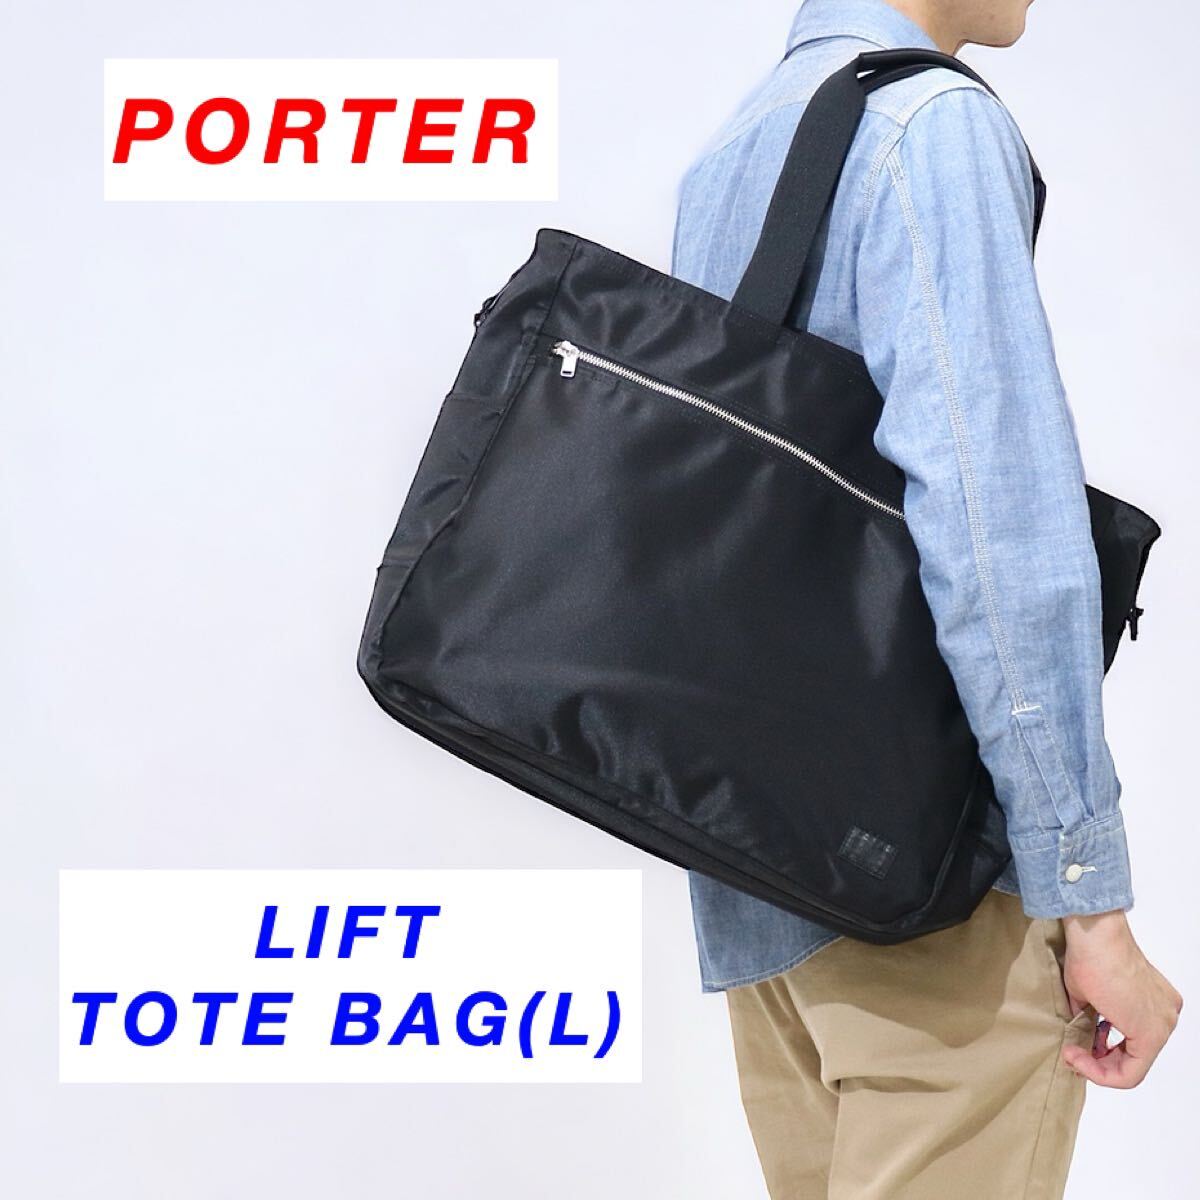 【完売品】PORTER / LIFT TOTE BAG(L) / ブラック / ポーター リフト トートバッグ / 大きいサイズ